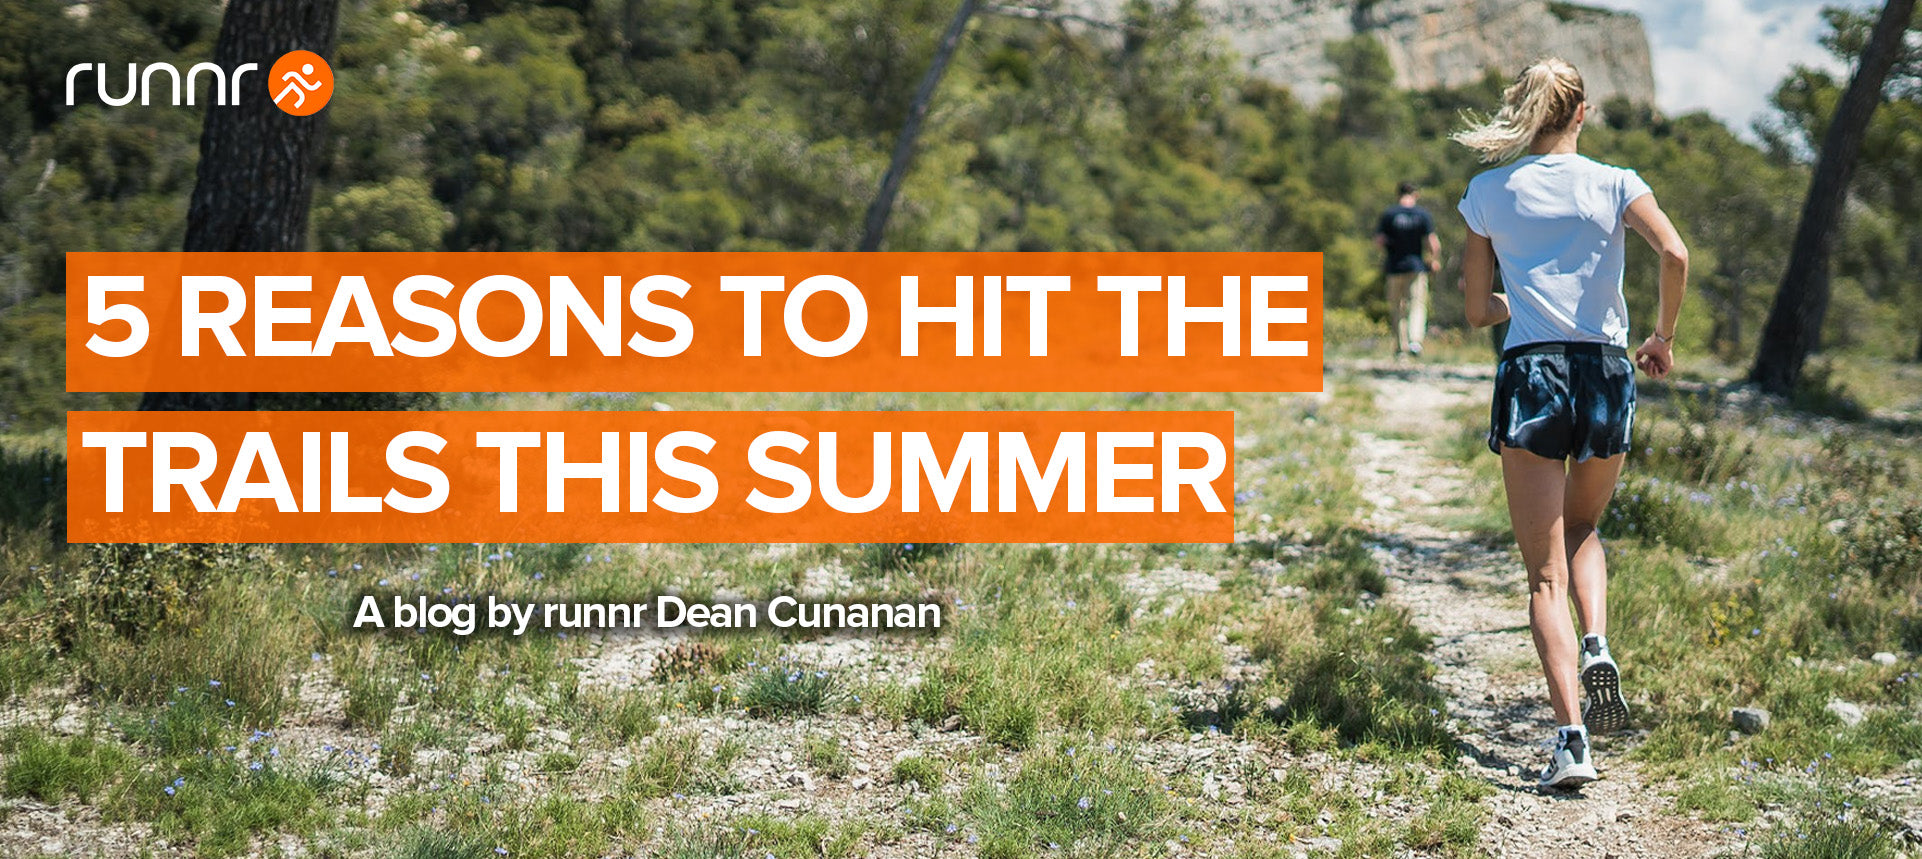 5 Reasons to Trail Run This Summer Runnr